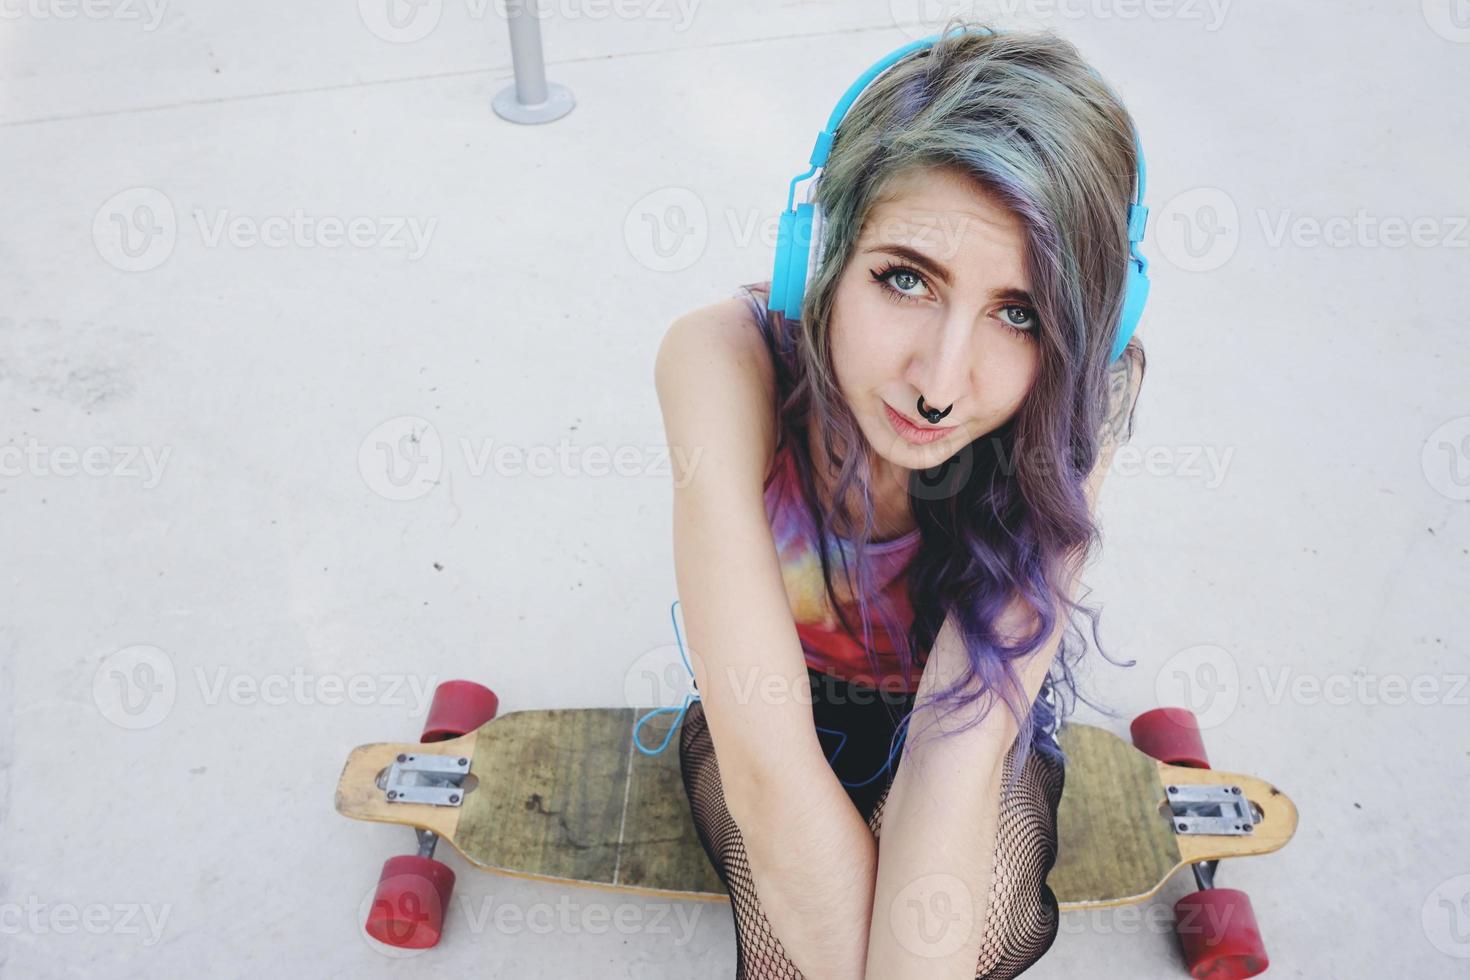 Femme patineuse adolescente dans un skate park photo